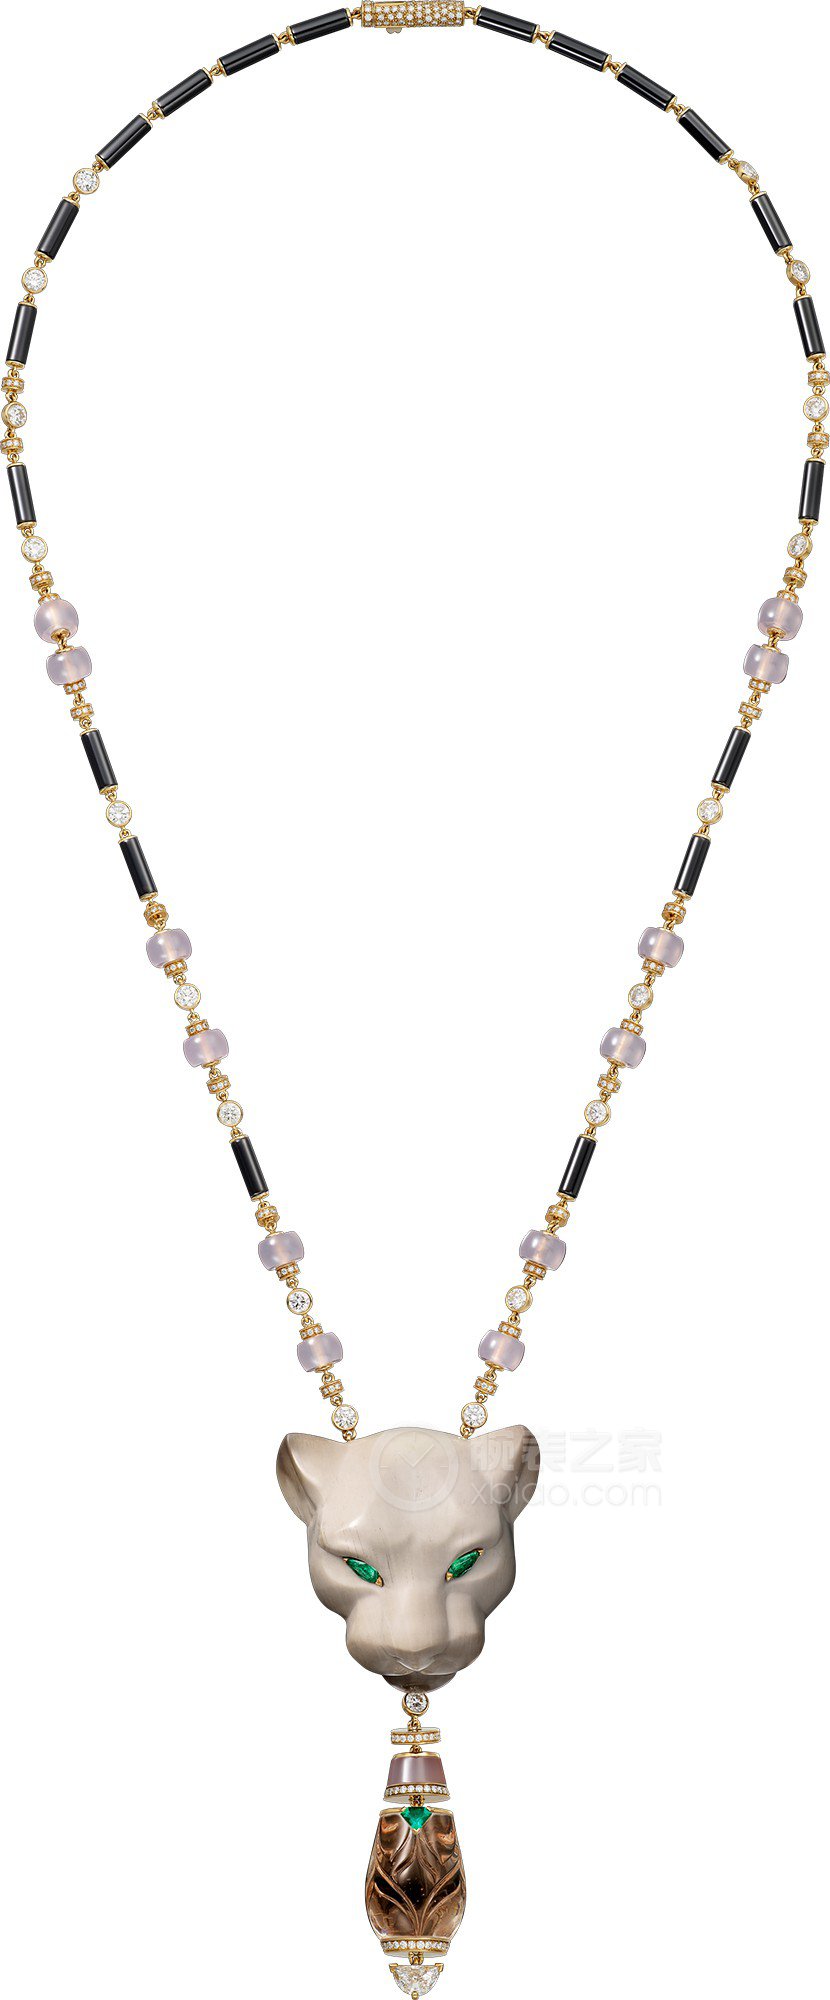 卡地亚LE VOYAGE RECOMMENCÉ高级珠宝系列PANTHÈRE HYPNOSE高级珠宝项链项链